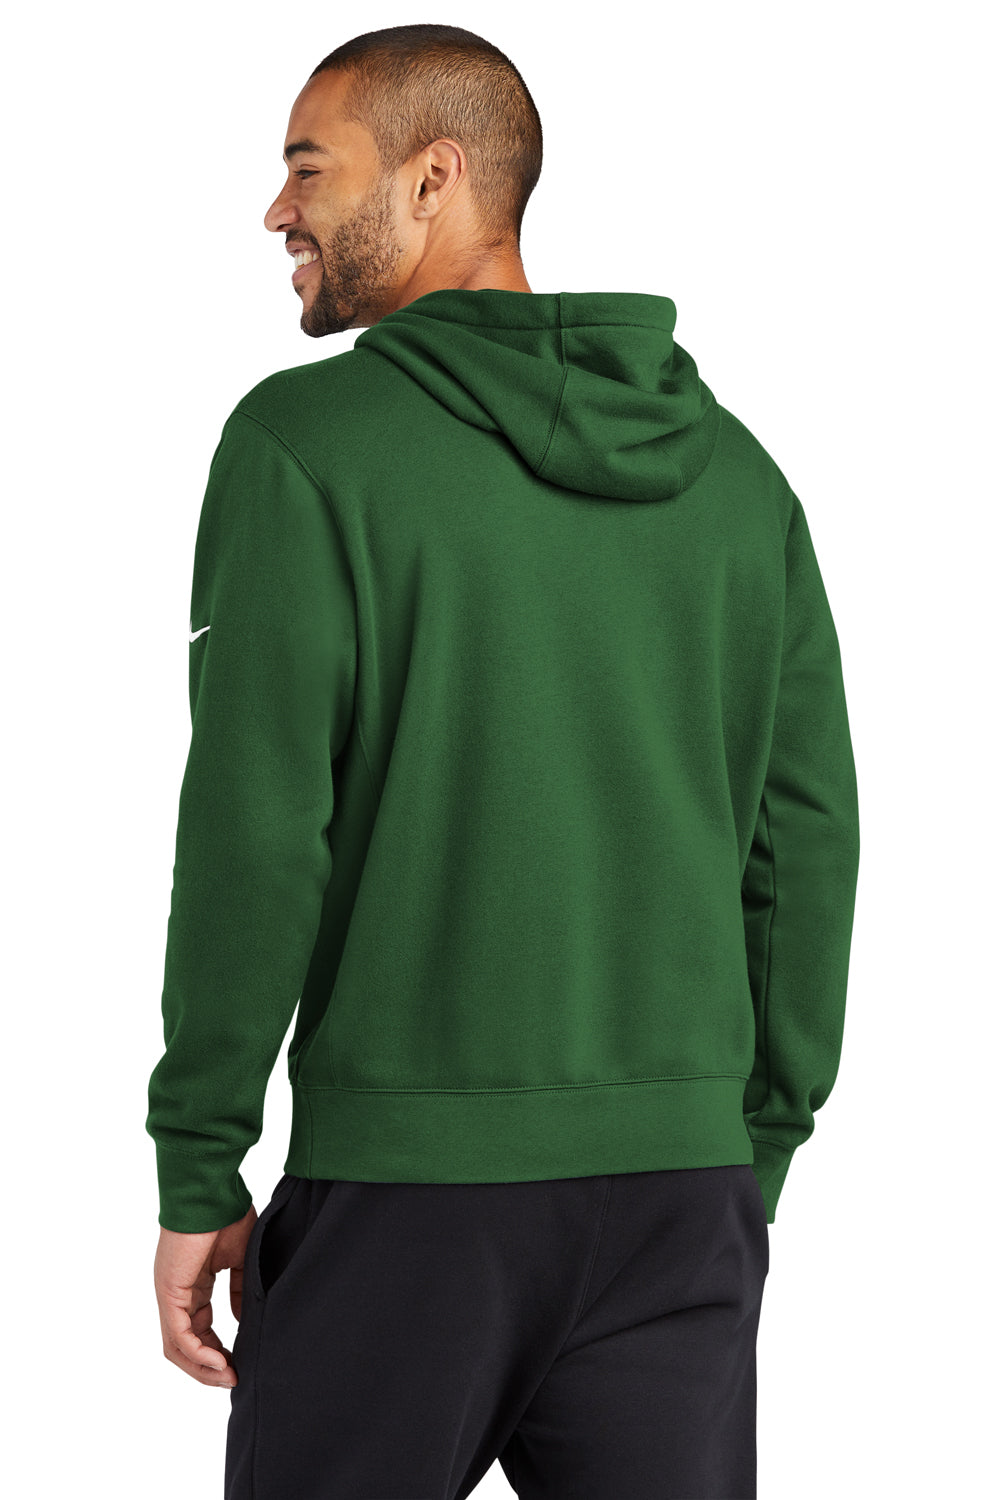 Nike NKDR1499 Mens Club Fleece Hooded Sweatshirt Hoodie Gorge Green Model Back